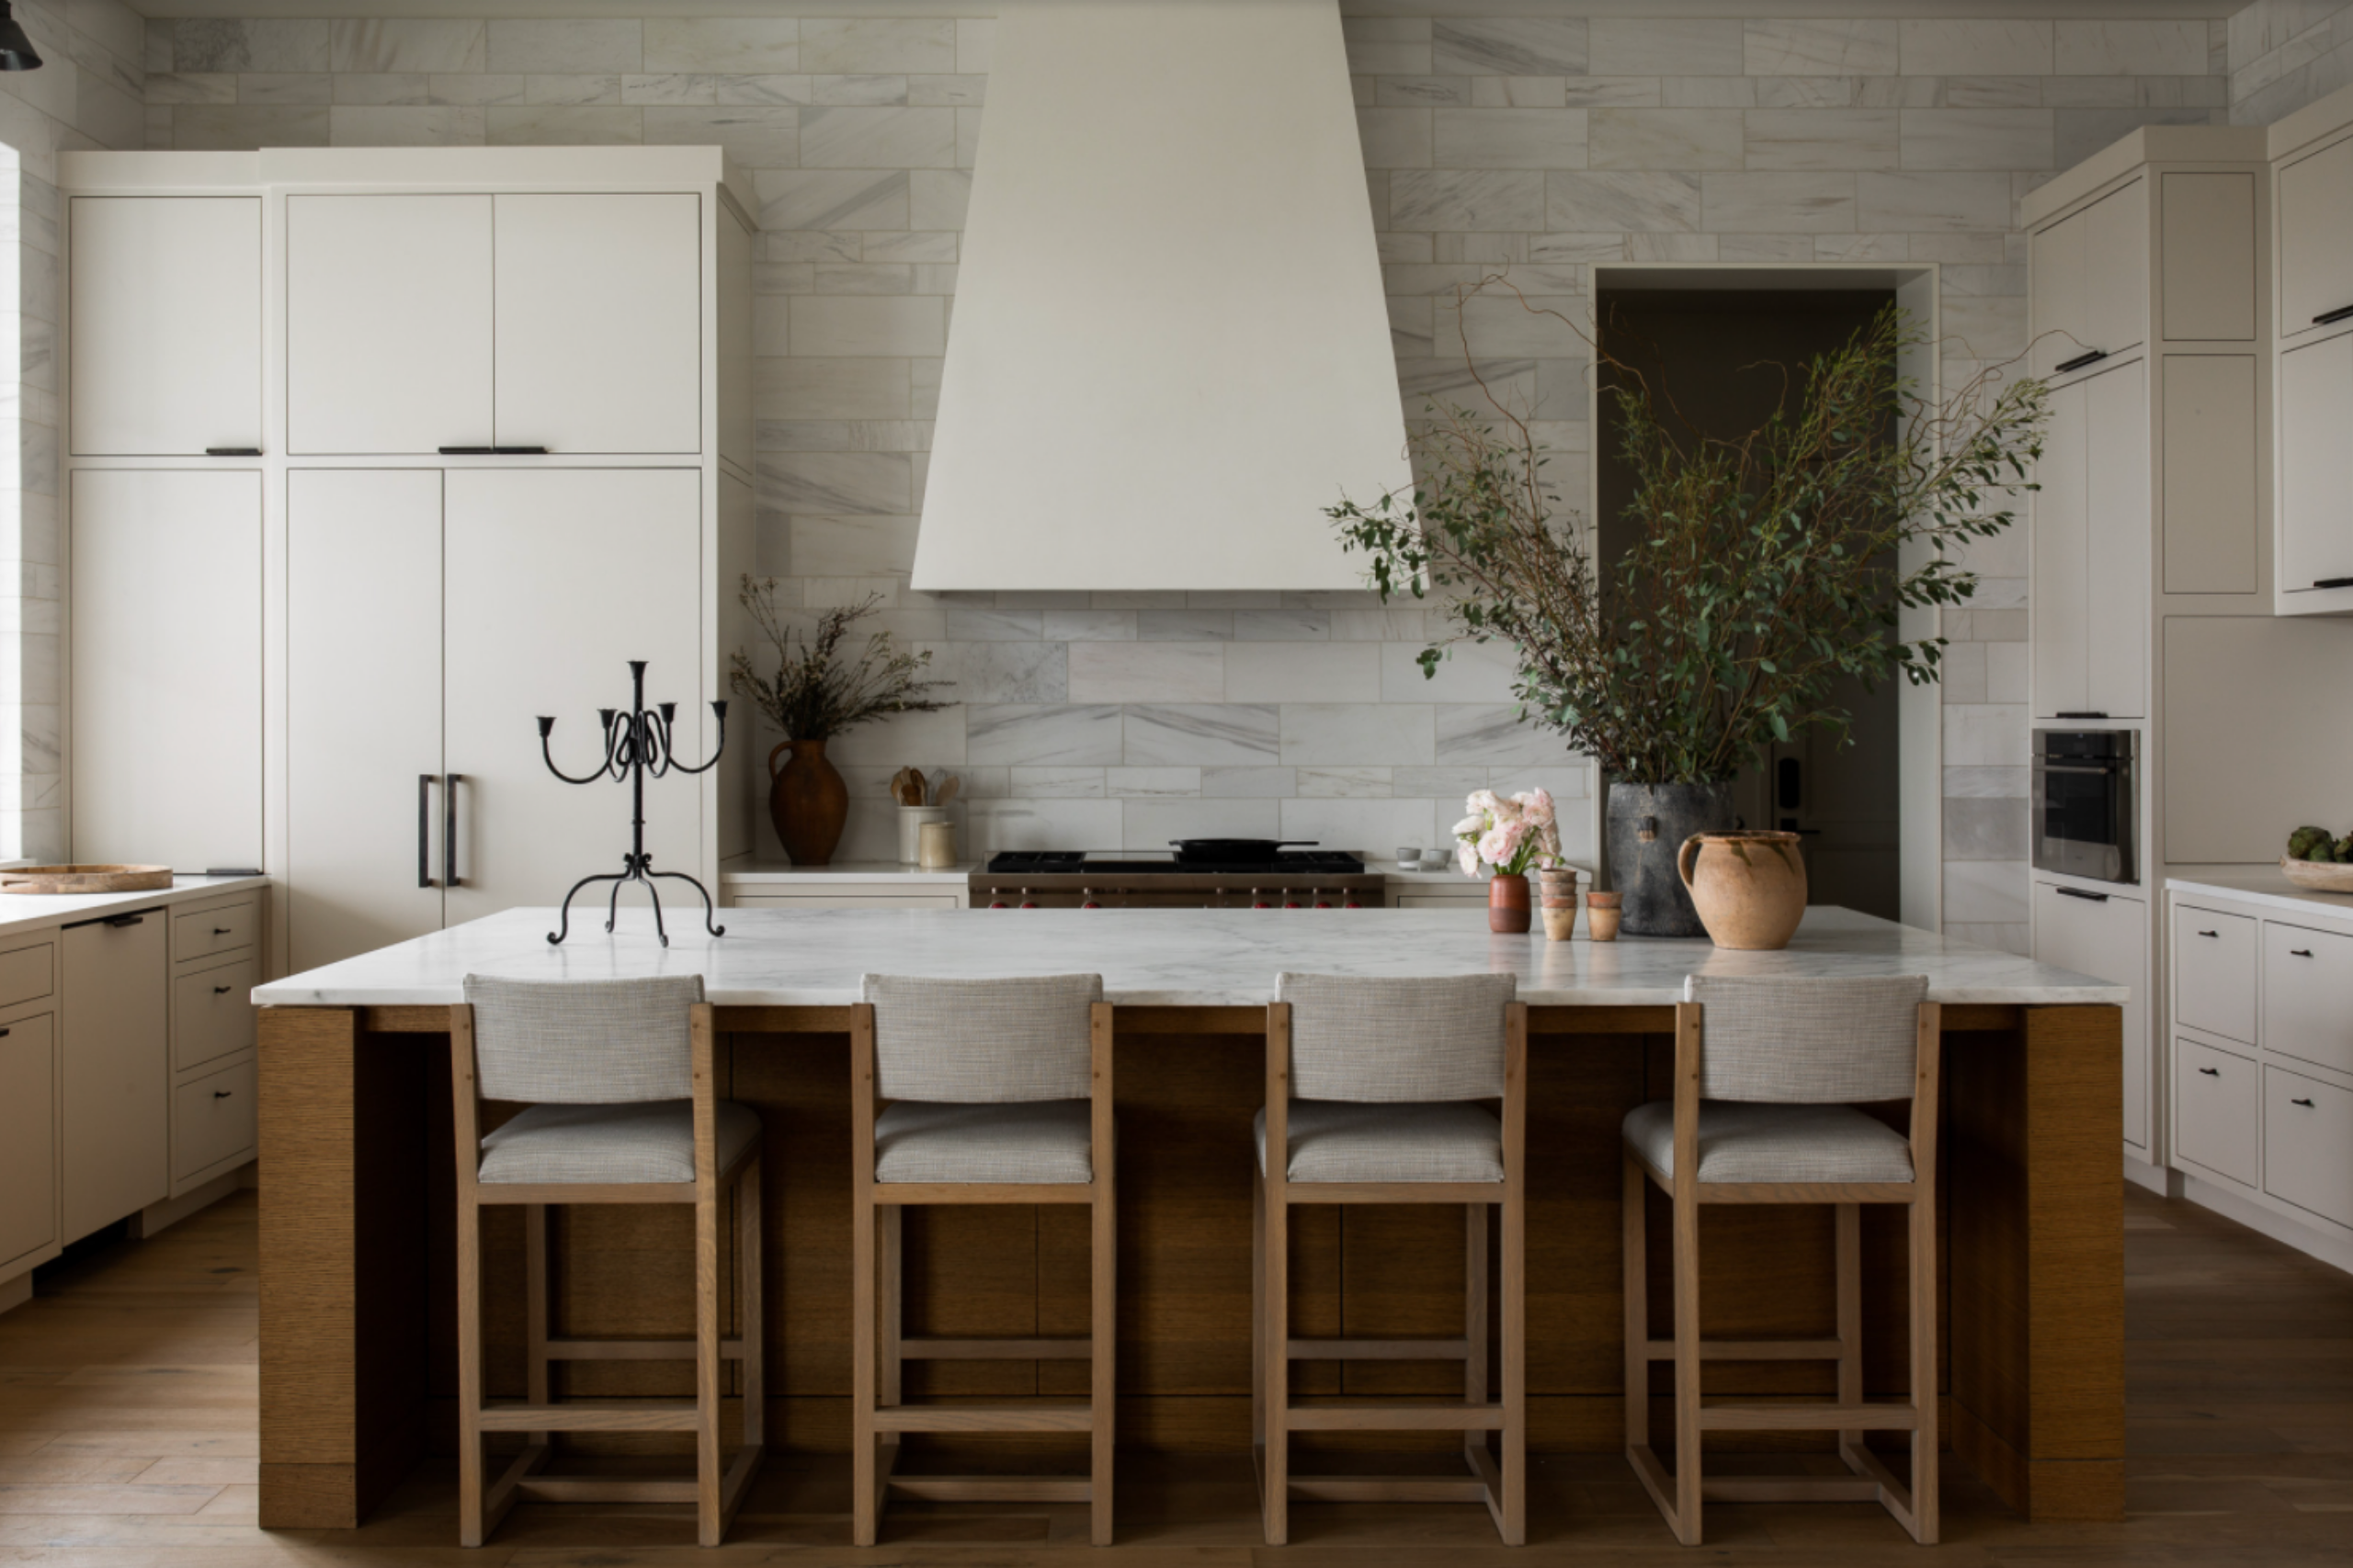 9-easy-steps-to-remodel-a-kitchen-sebring-design-build